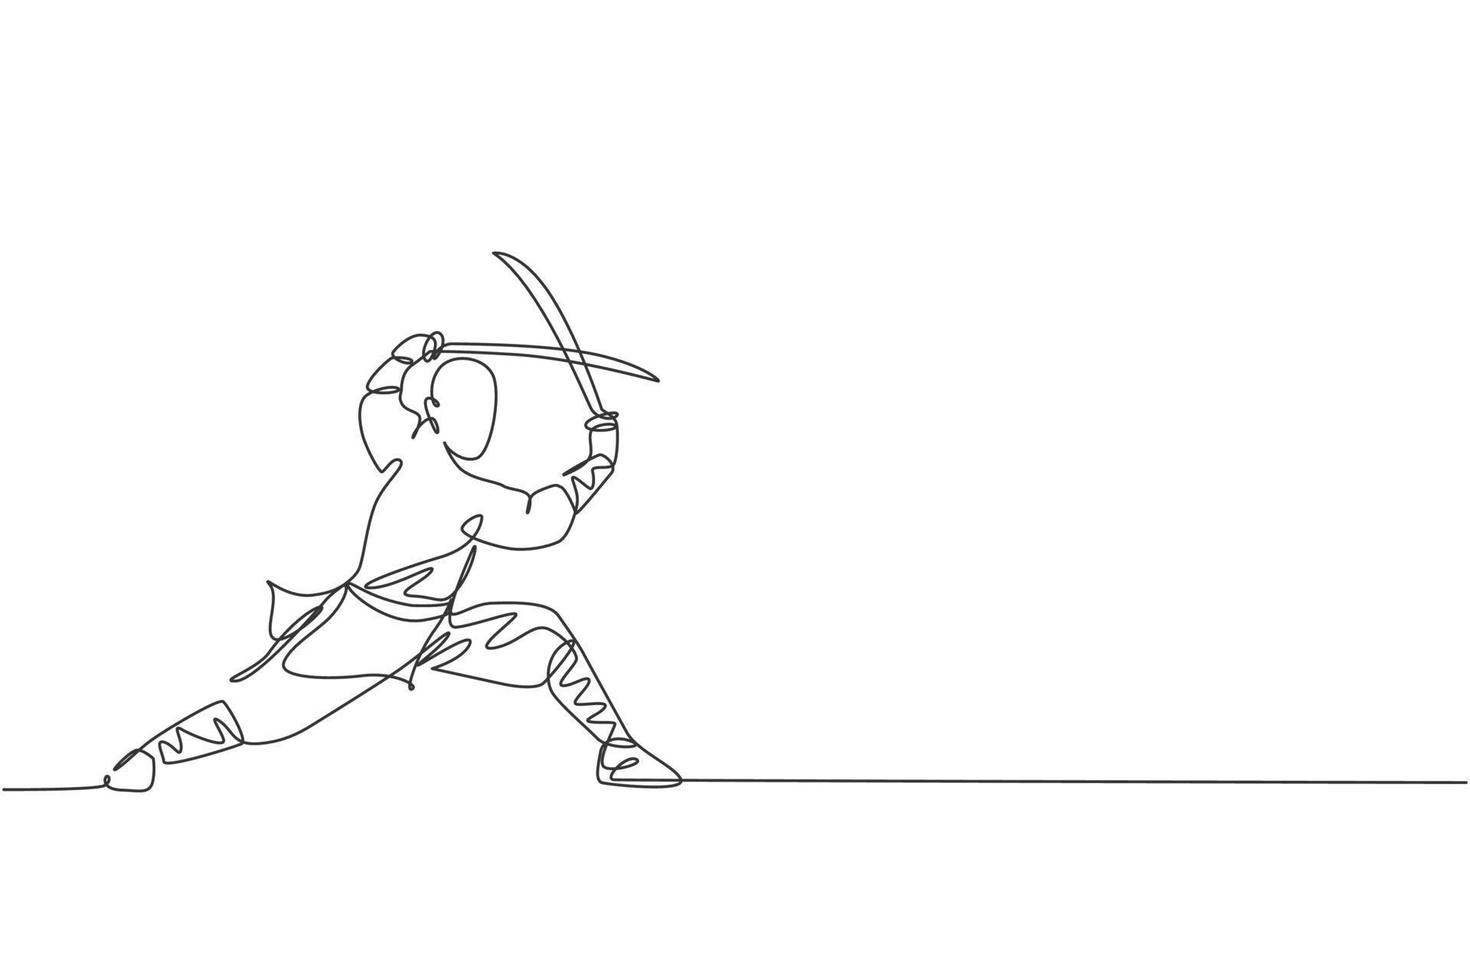 dessin en ligne continue d'un jeune moine shaolin musclé tenant un train d'épée au temple de shaolin. concept de combat de kung fu traditionnel chinois. illustration vectorielle de conception de dessin à une ligne à la mode vecteur